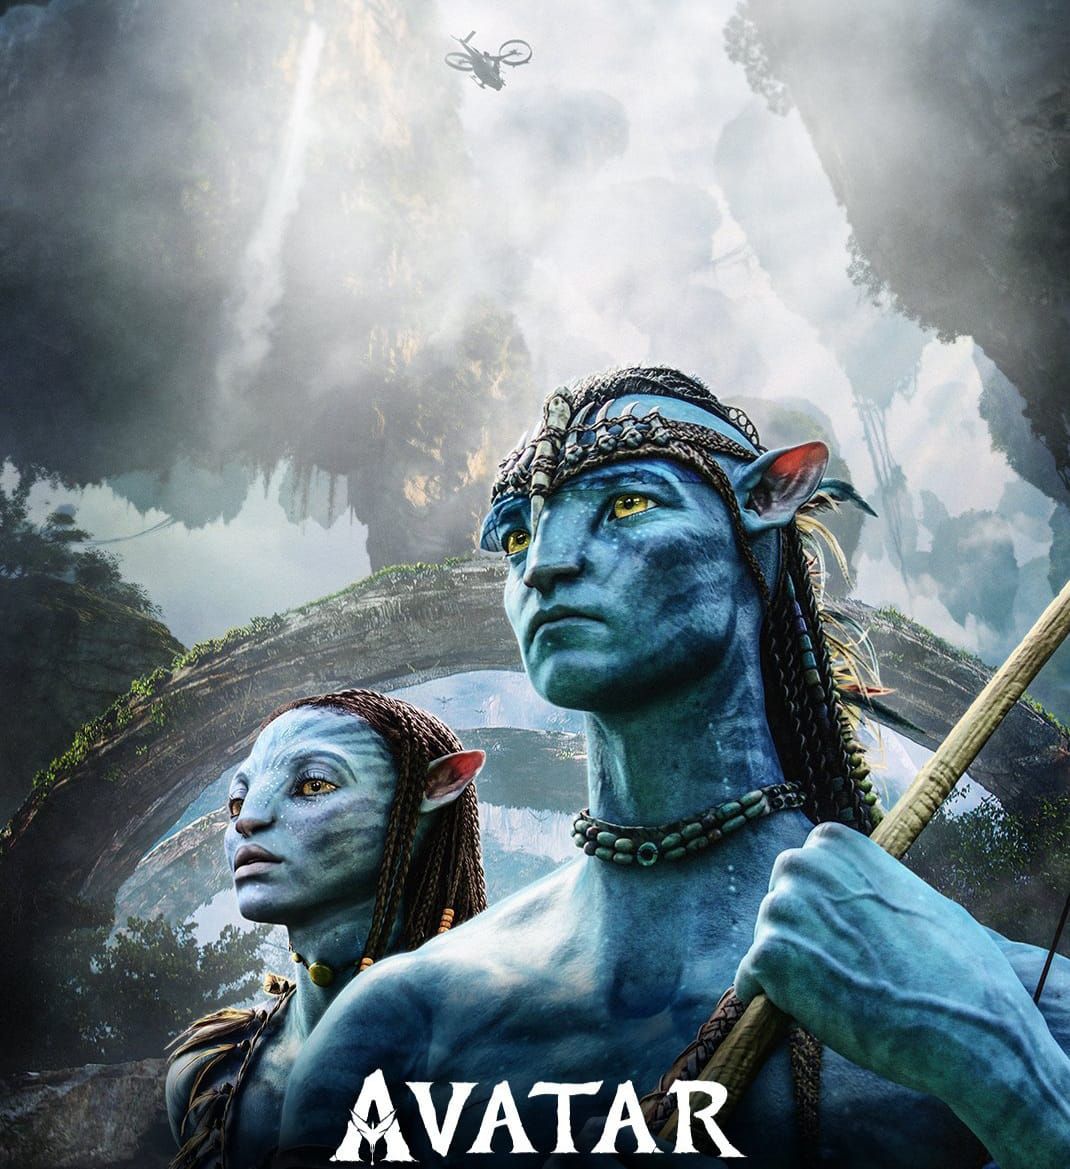 Sinopsis Film Avatar Tayang Kembali September 2022 Di Bioskop Dengan 4k Hdr Avatar 2 Tayang 3907